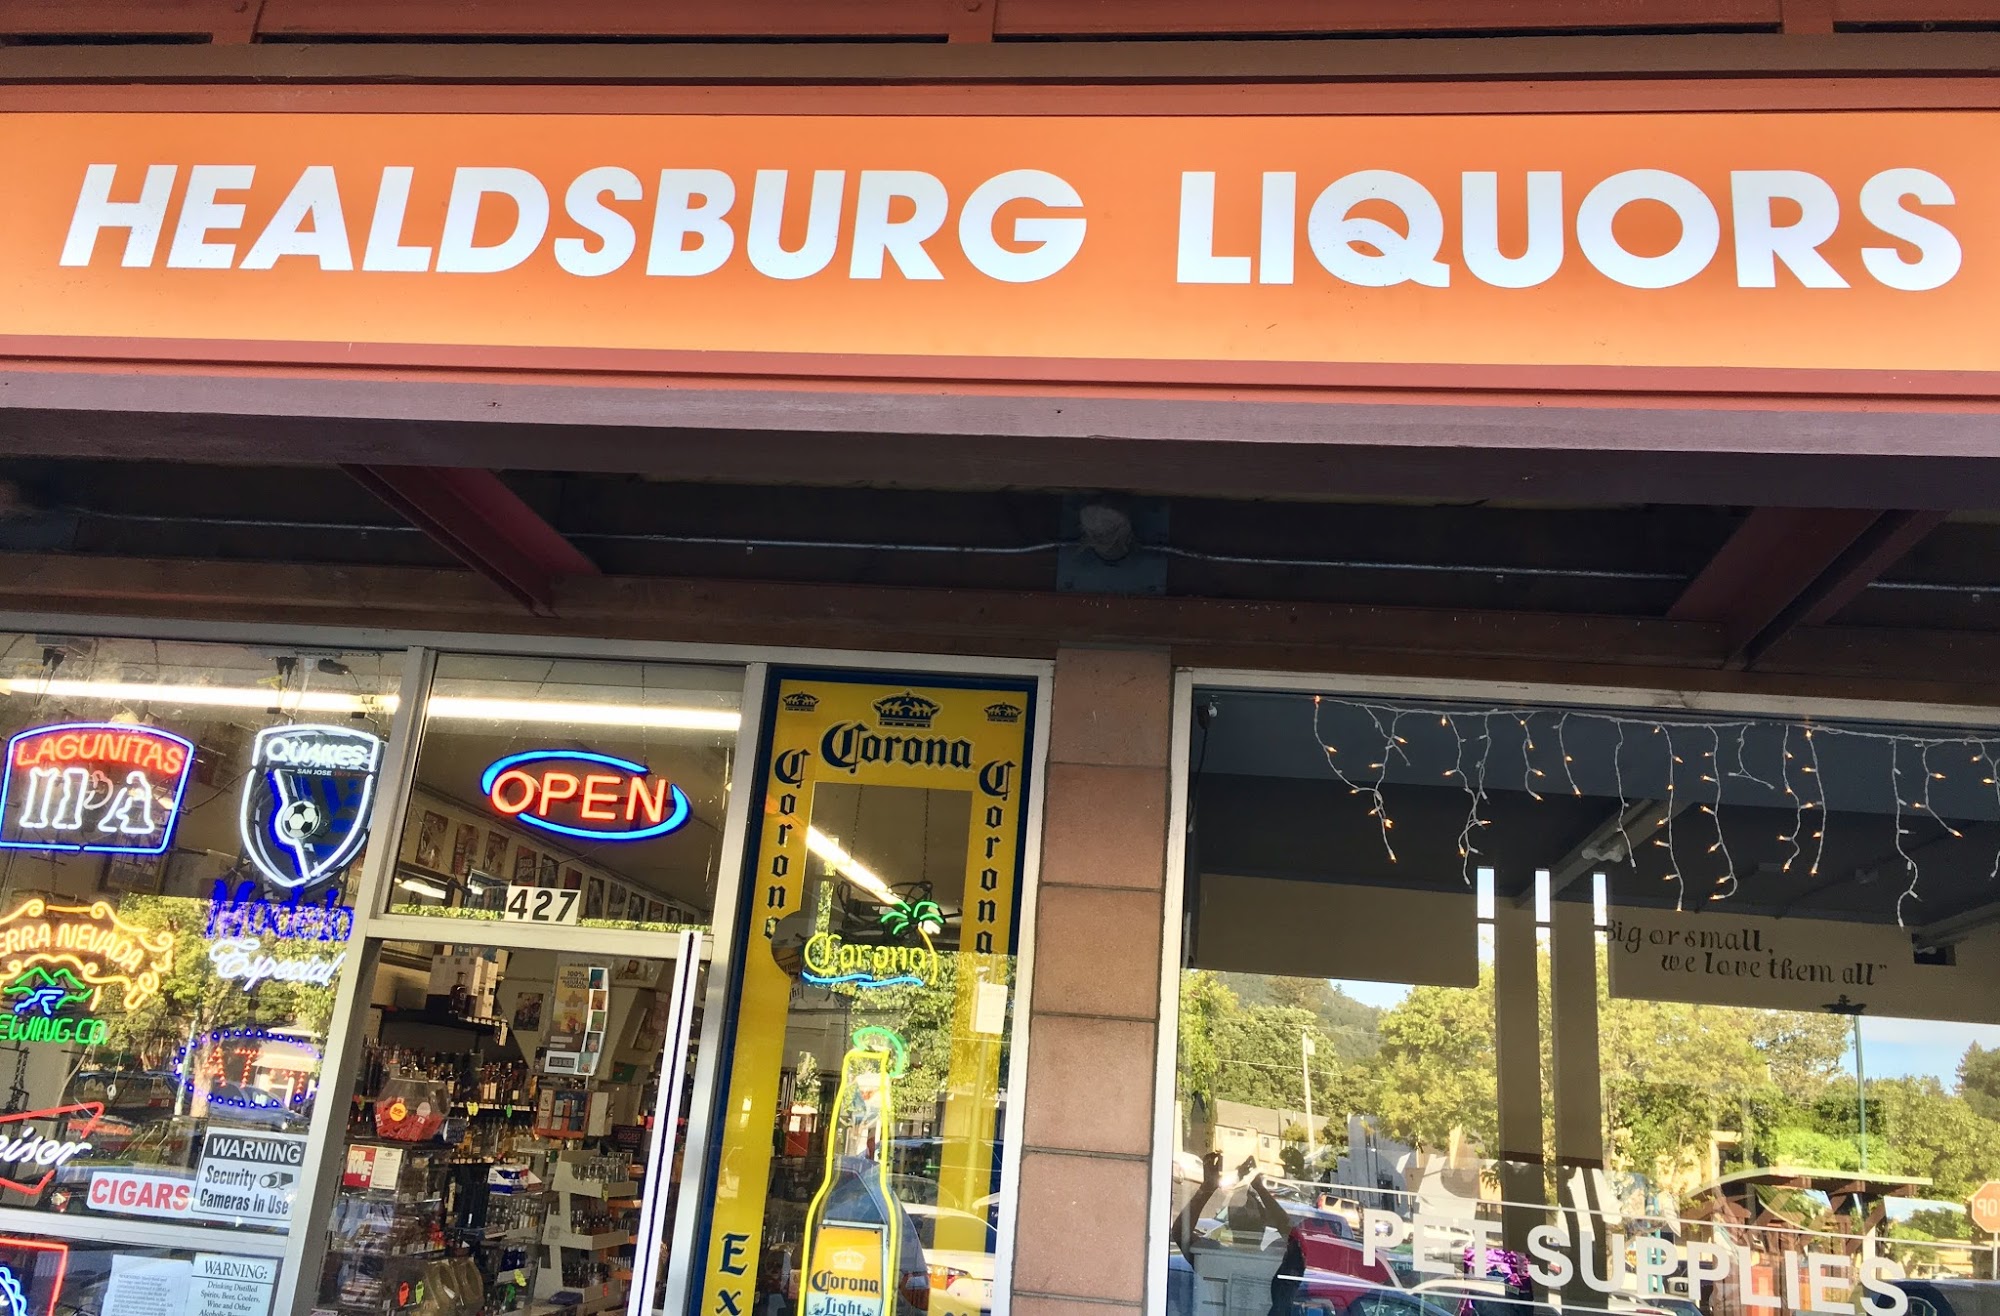 Healdsburg Liquors